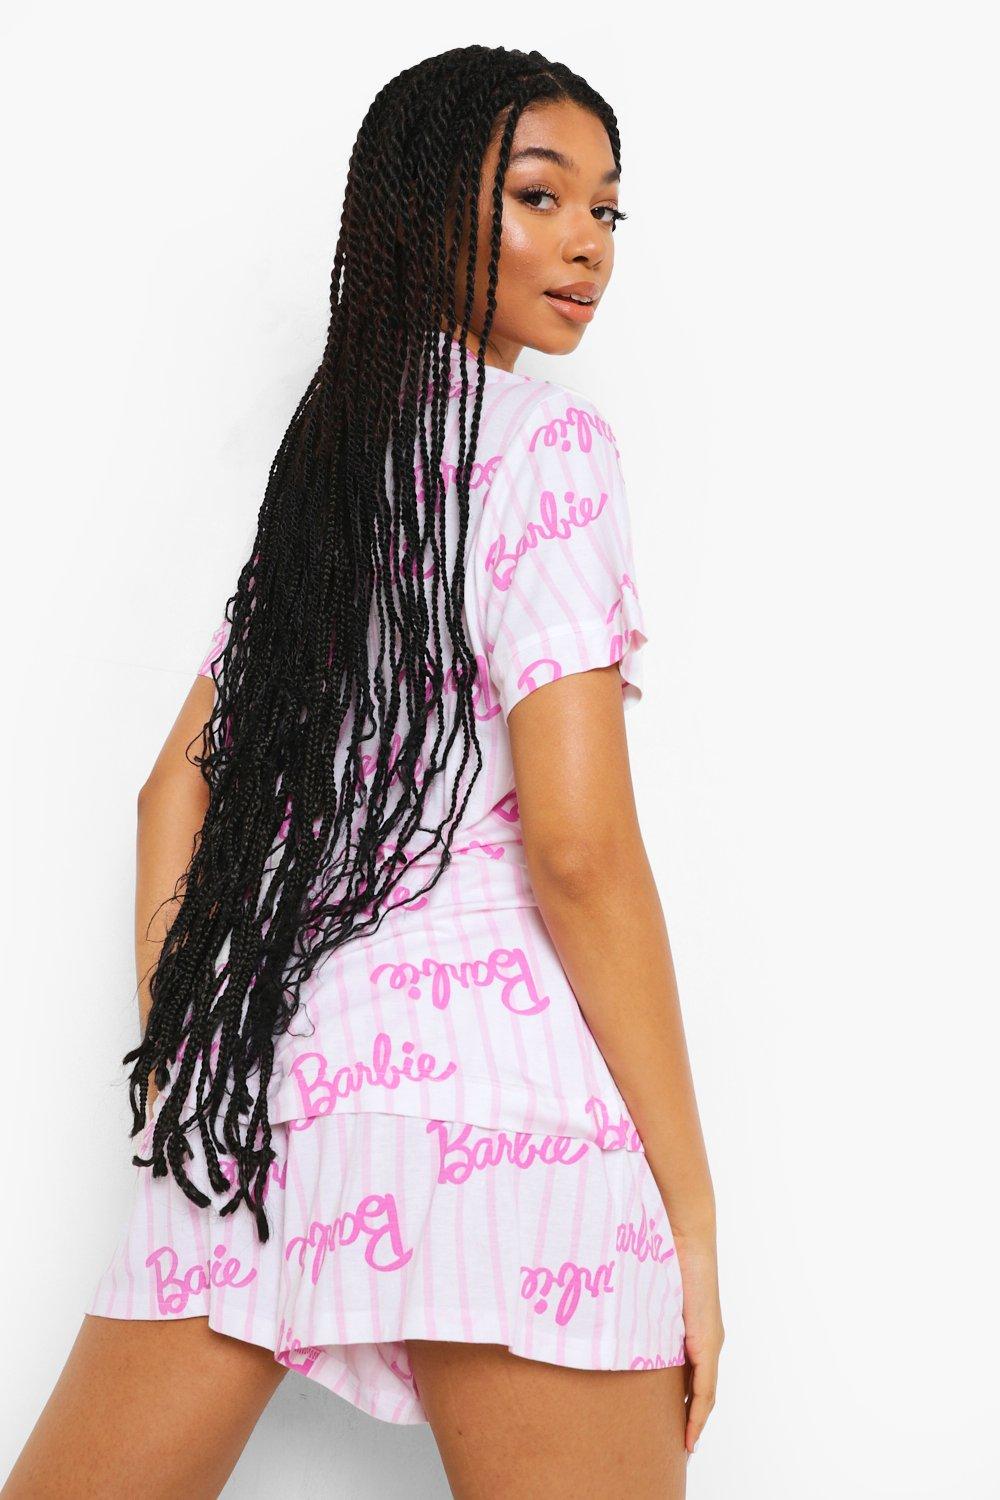 Grande Taille - Pantalon De Pyjama Barbie - Mix N Match Pink Femme